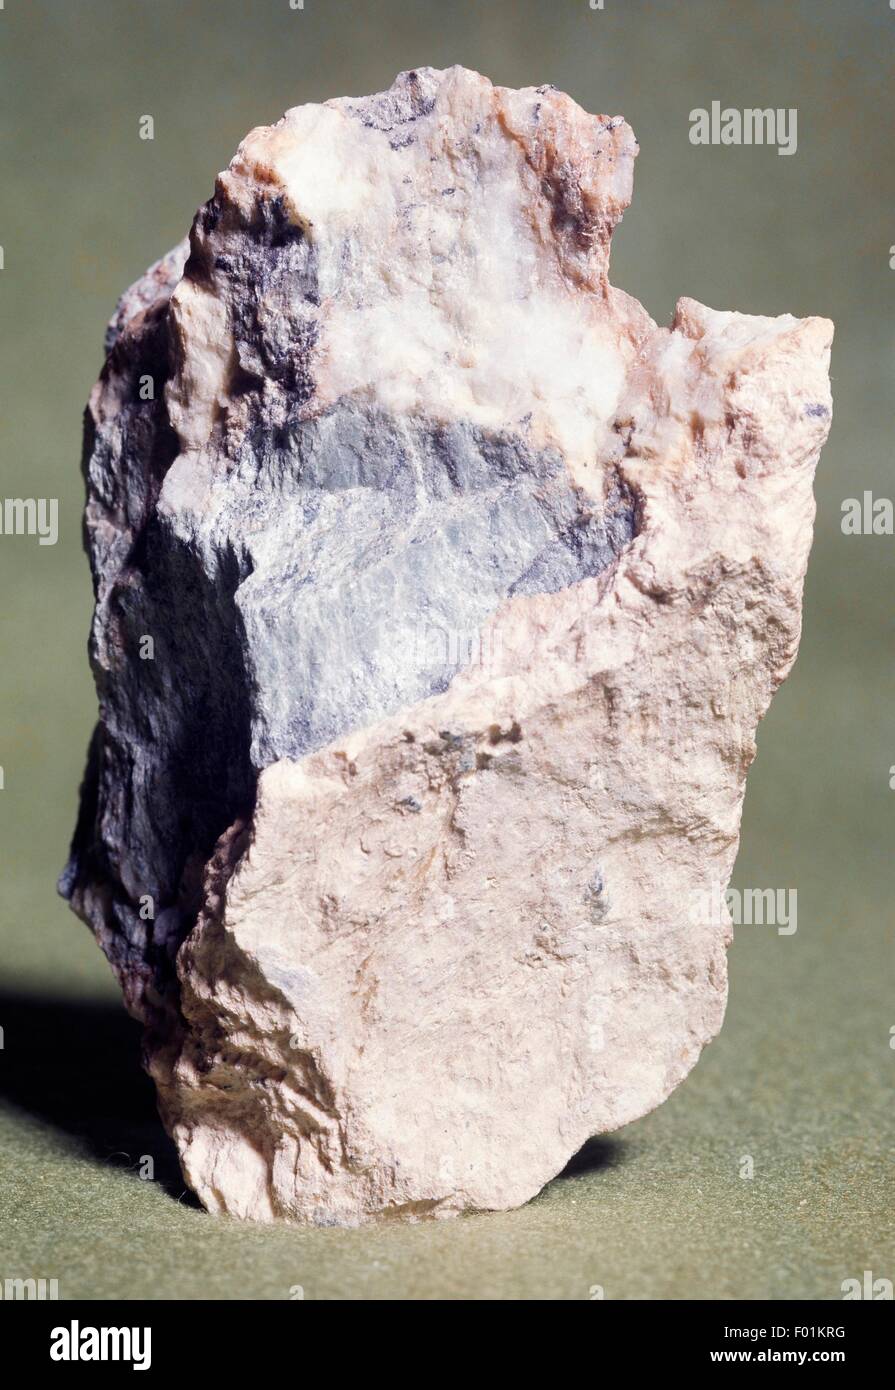 Brugnatellite, carbonate, with Brucite, magnesium hydroxide. Stock Photo